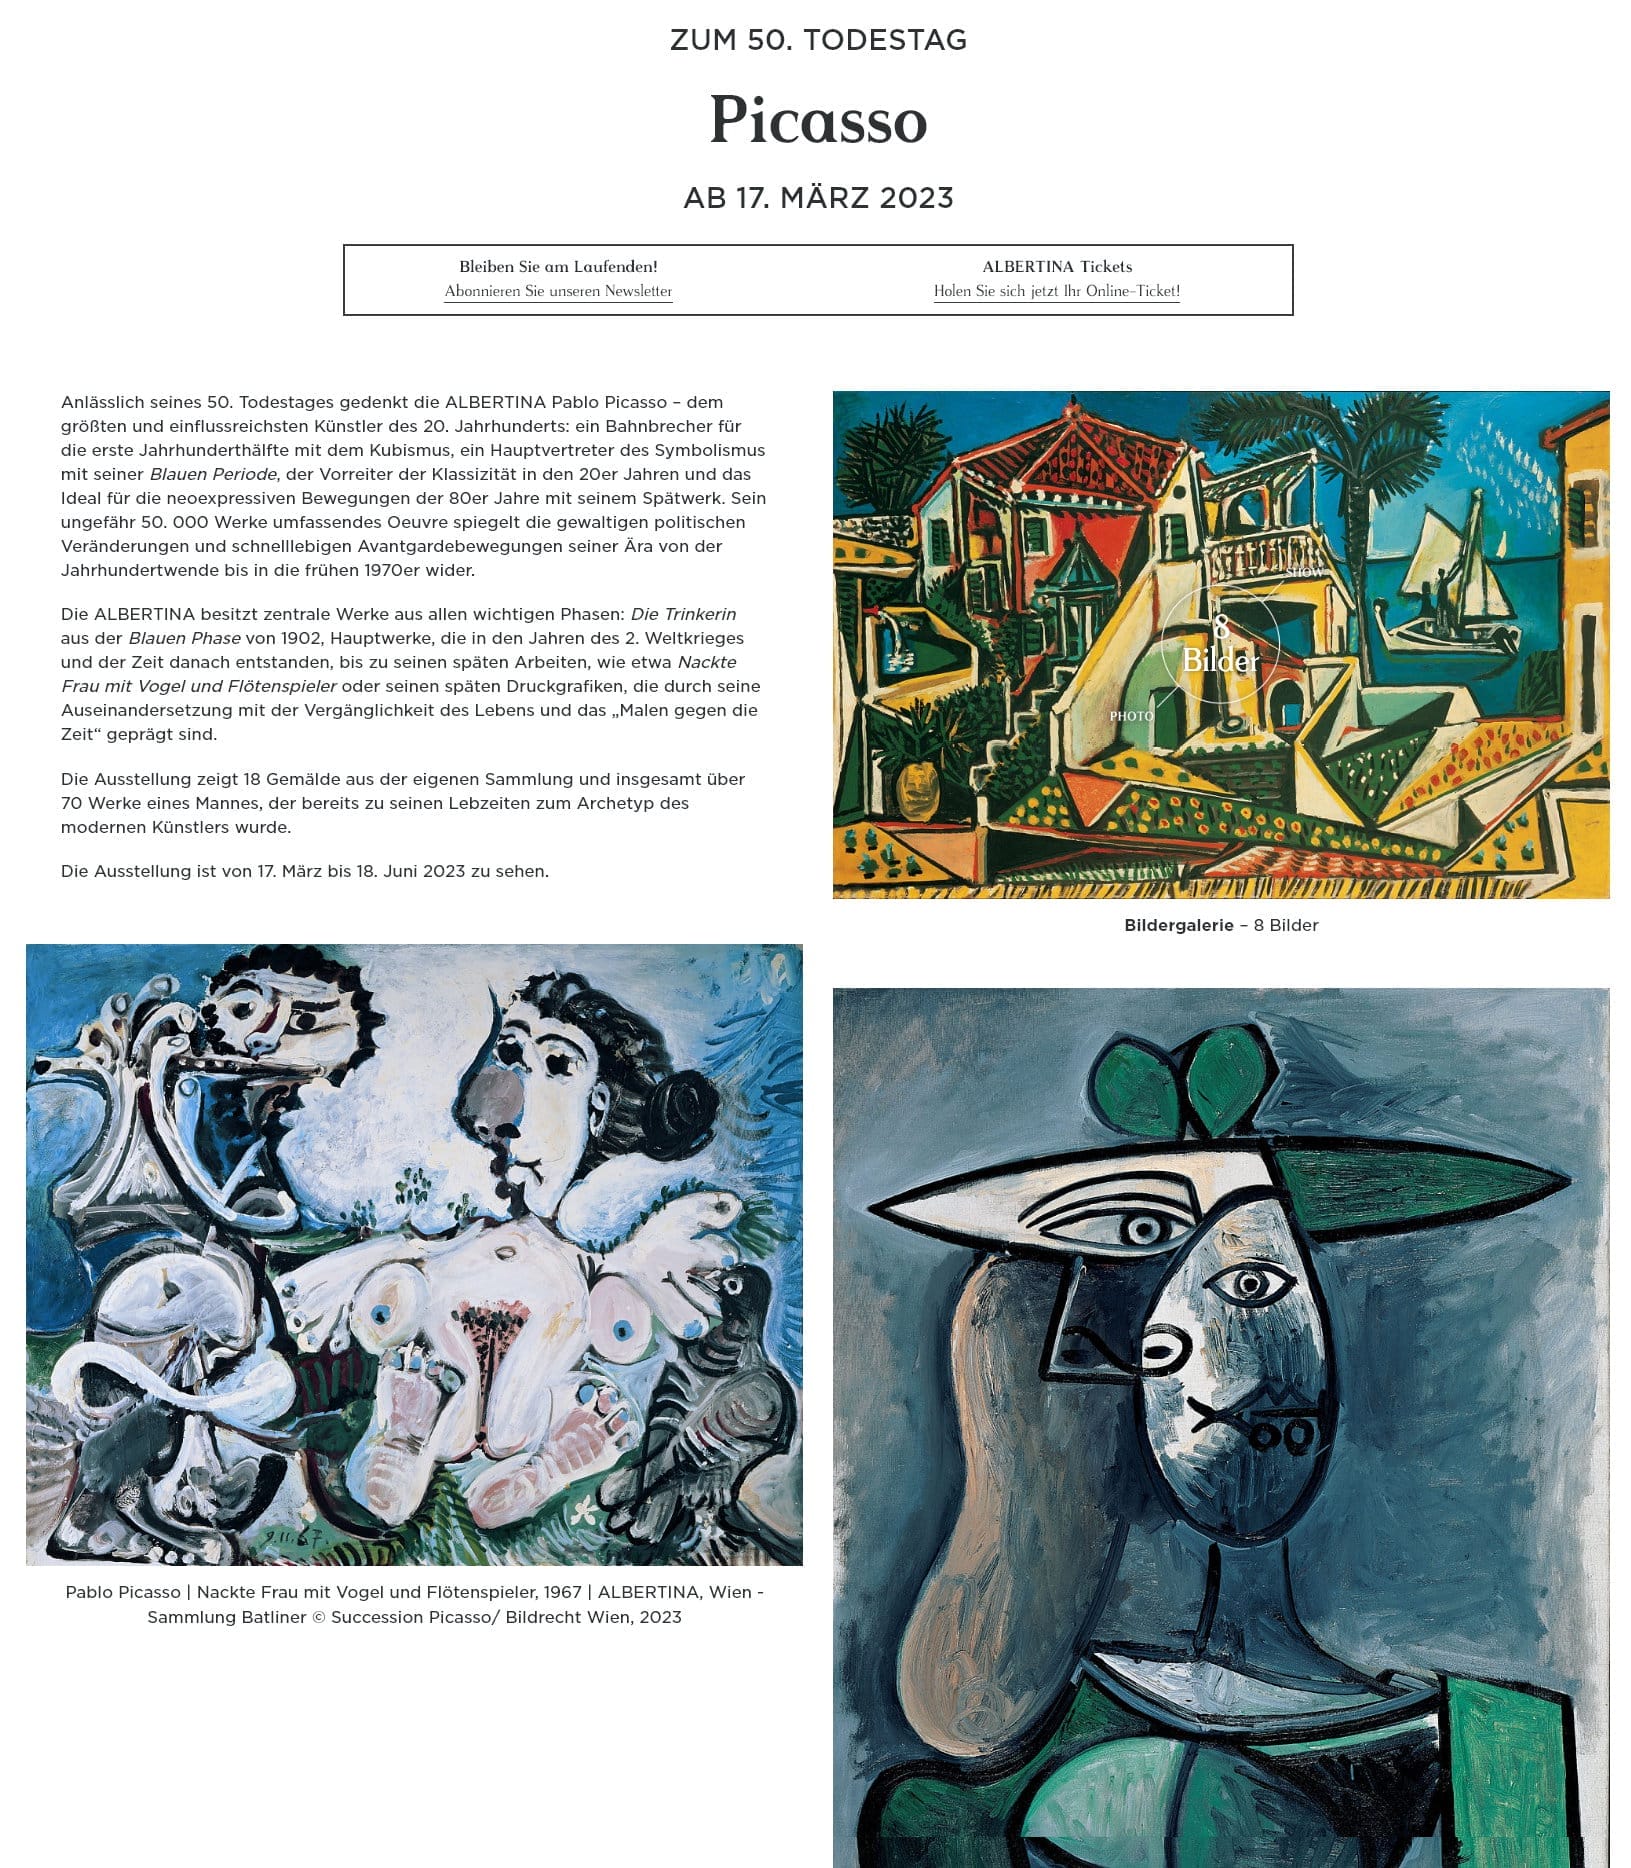 Anlässlich seines 50. Todestages gedenkt die ALBERTINA Pablo Picasso – dem größten und einflussreichsten Künstler des 20. Jahrhunderts